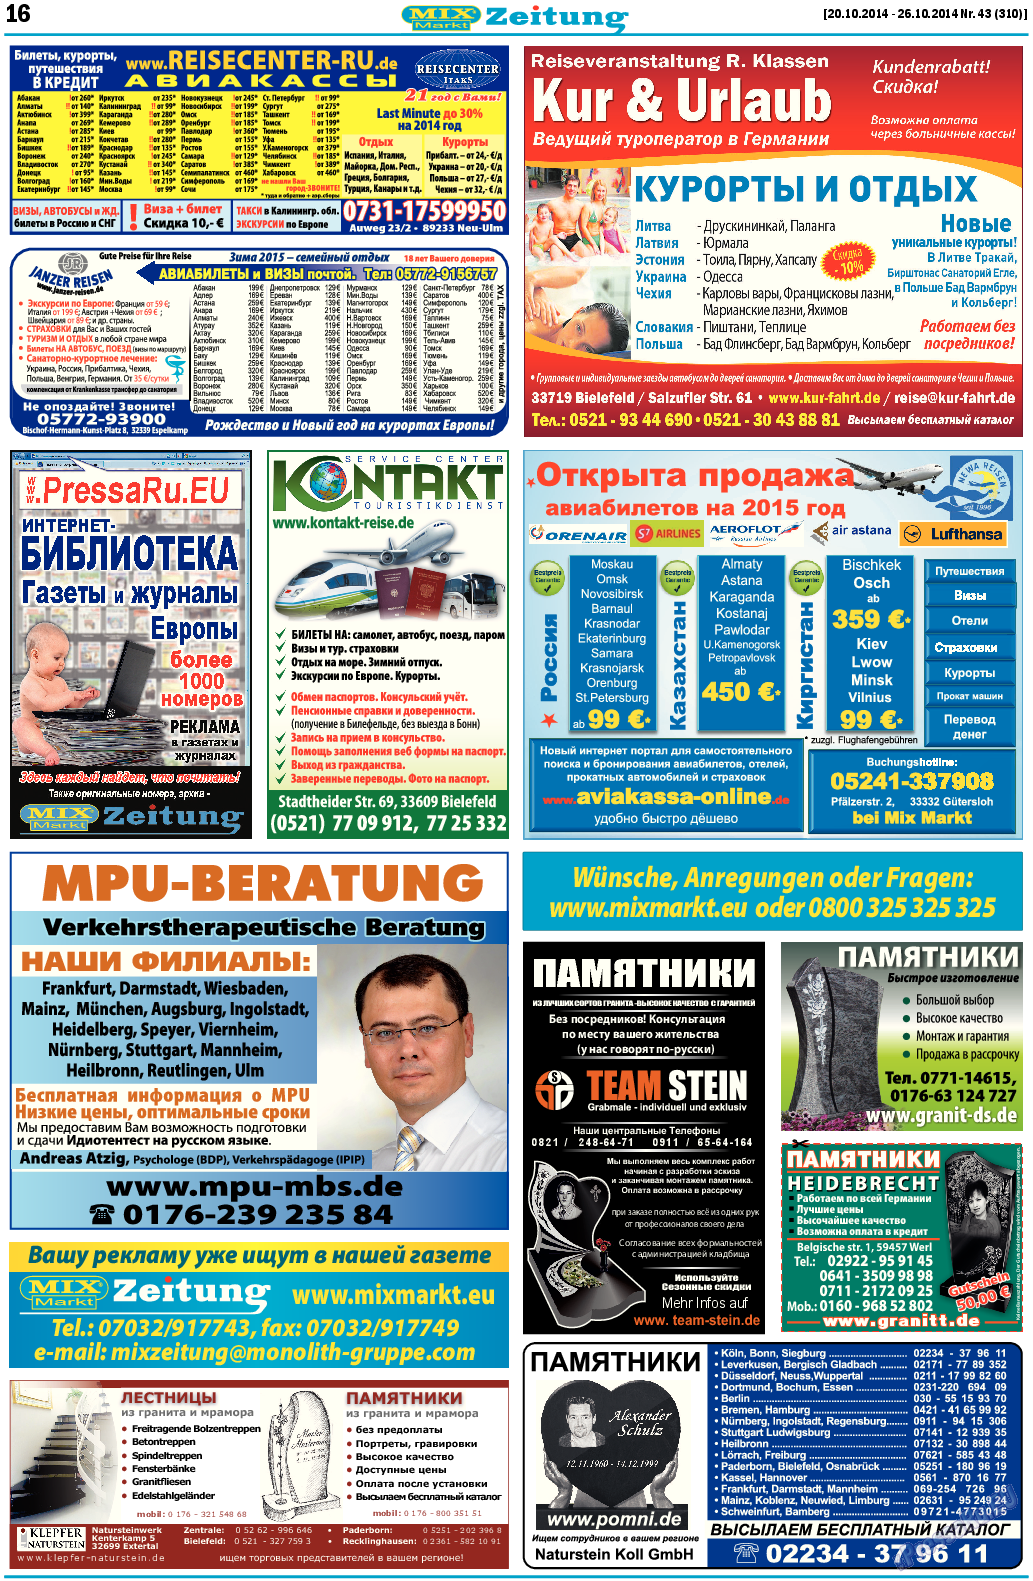 MIX-Markt Zeitung, газета. 2014 №43 стр.16